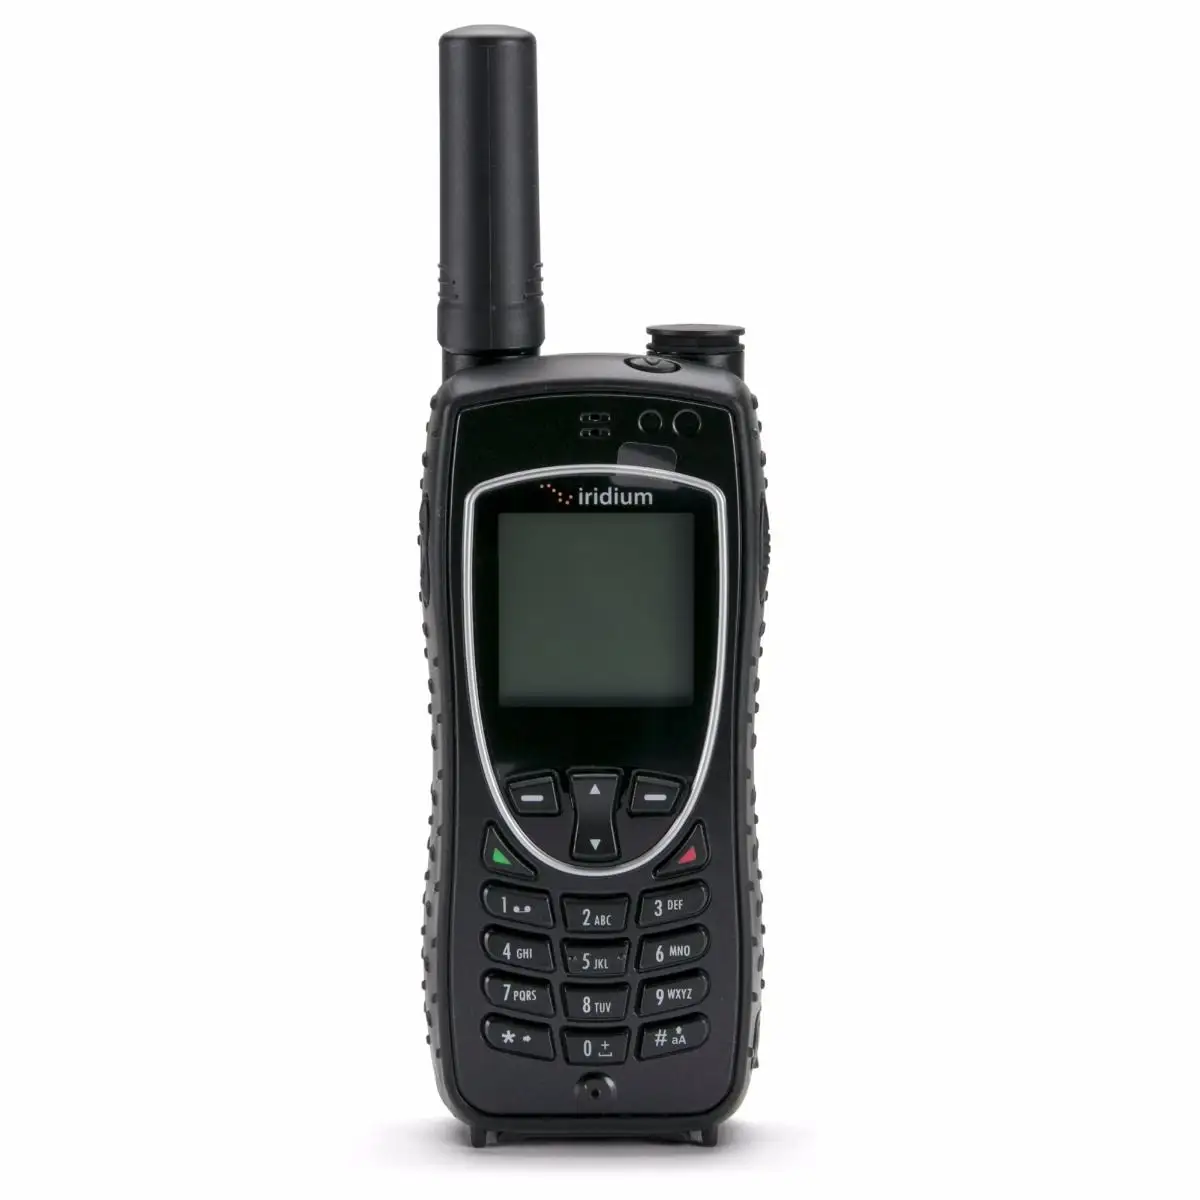 NEW Iridium 9575 Extreme Satellite Phone